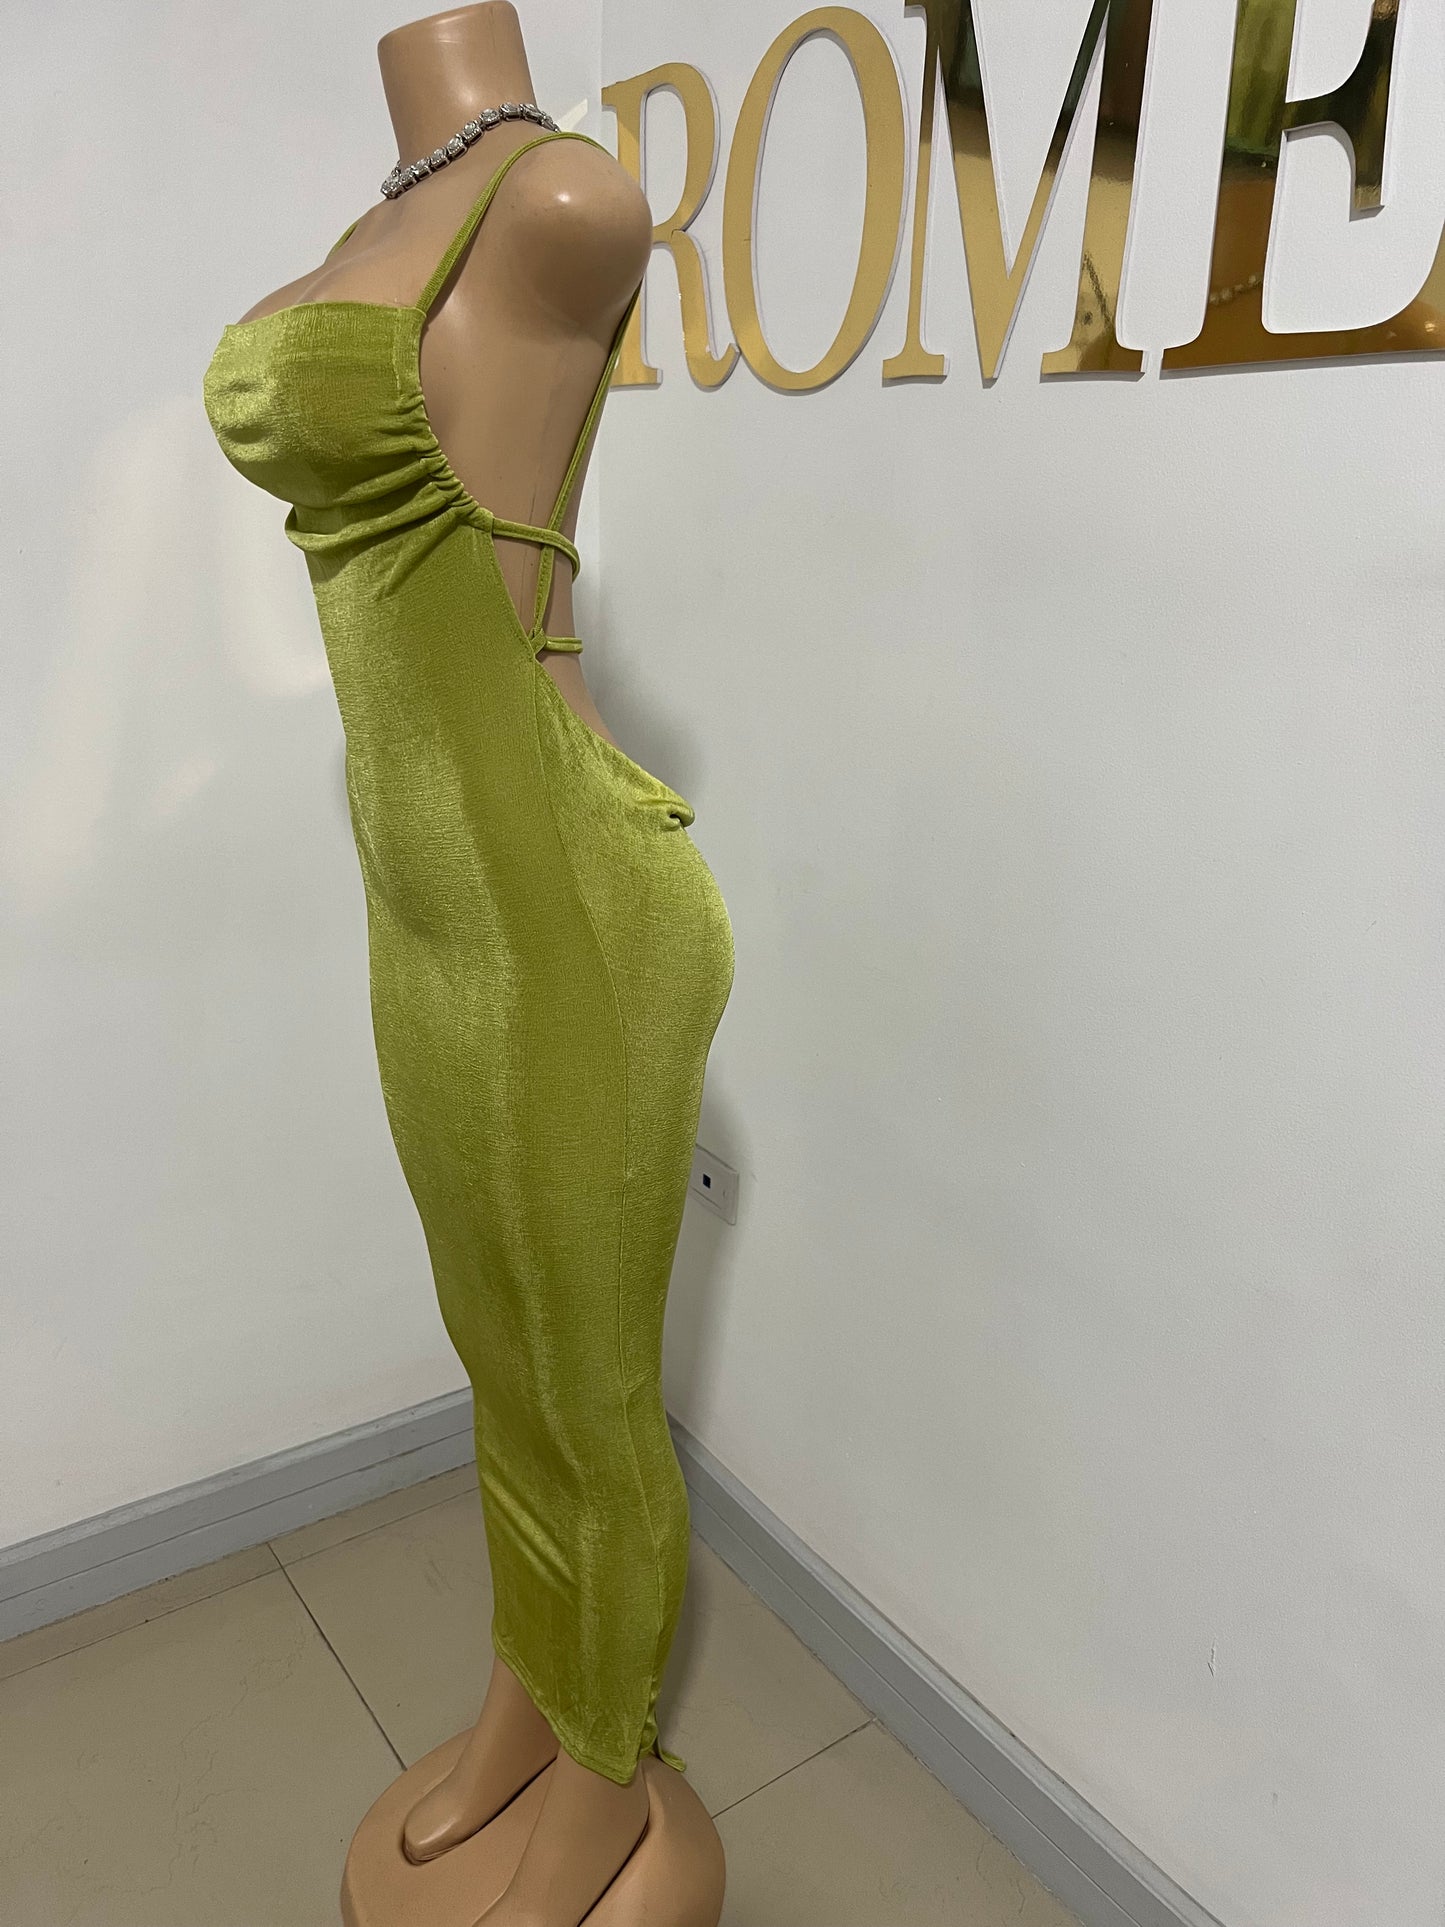 Carey Vibe Dress (Green)